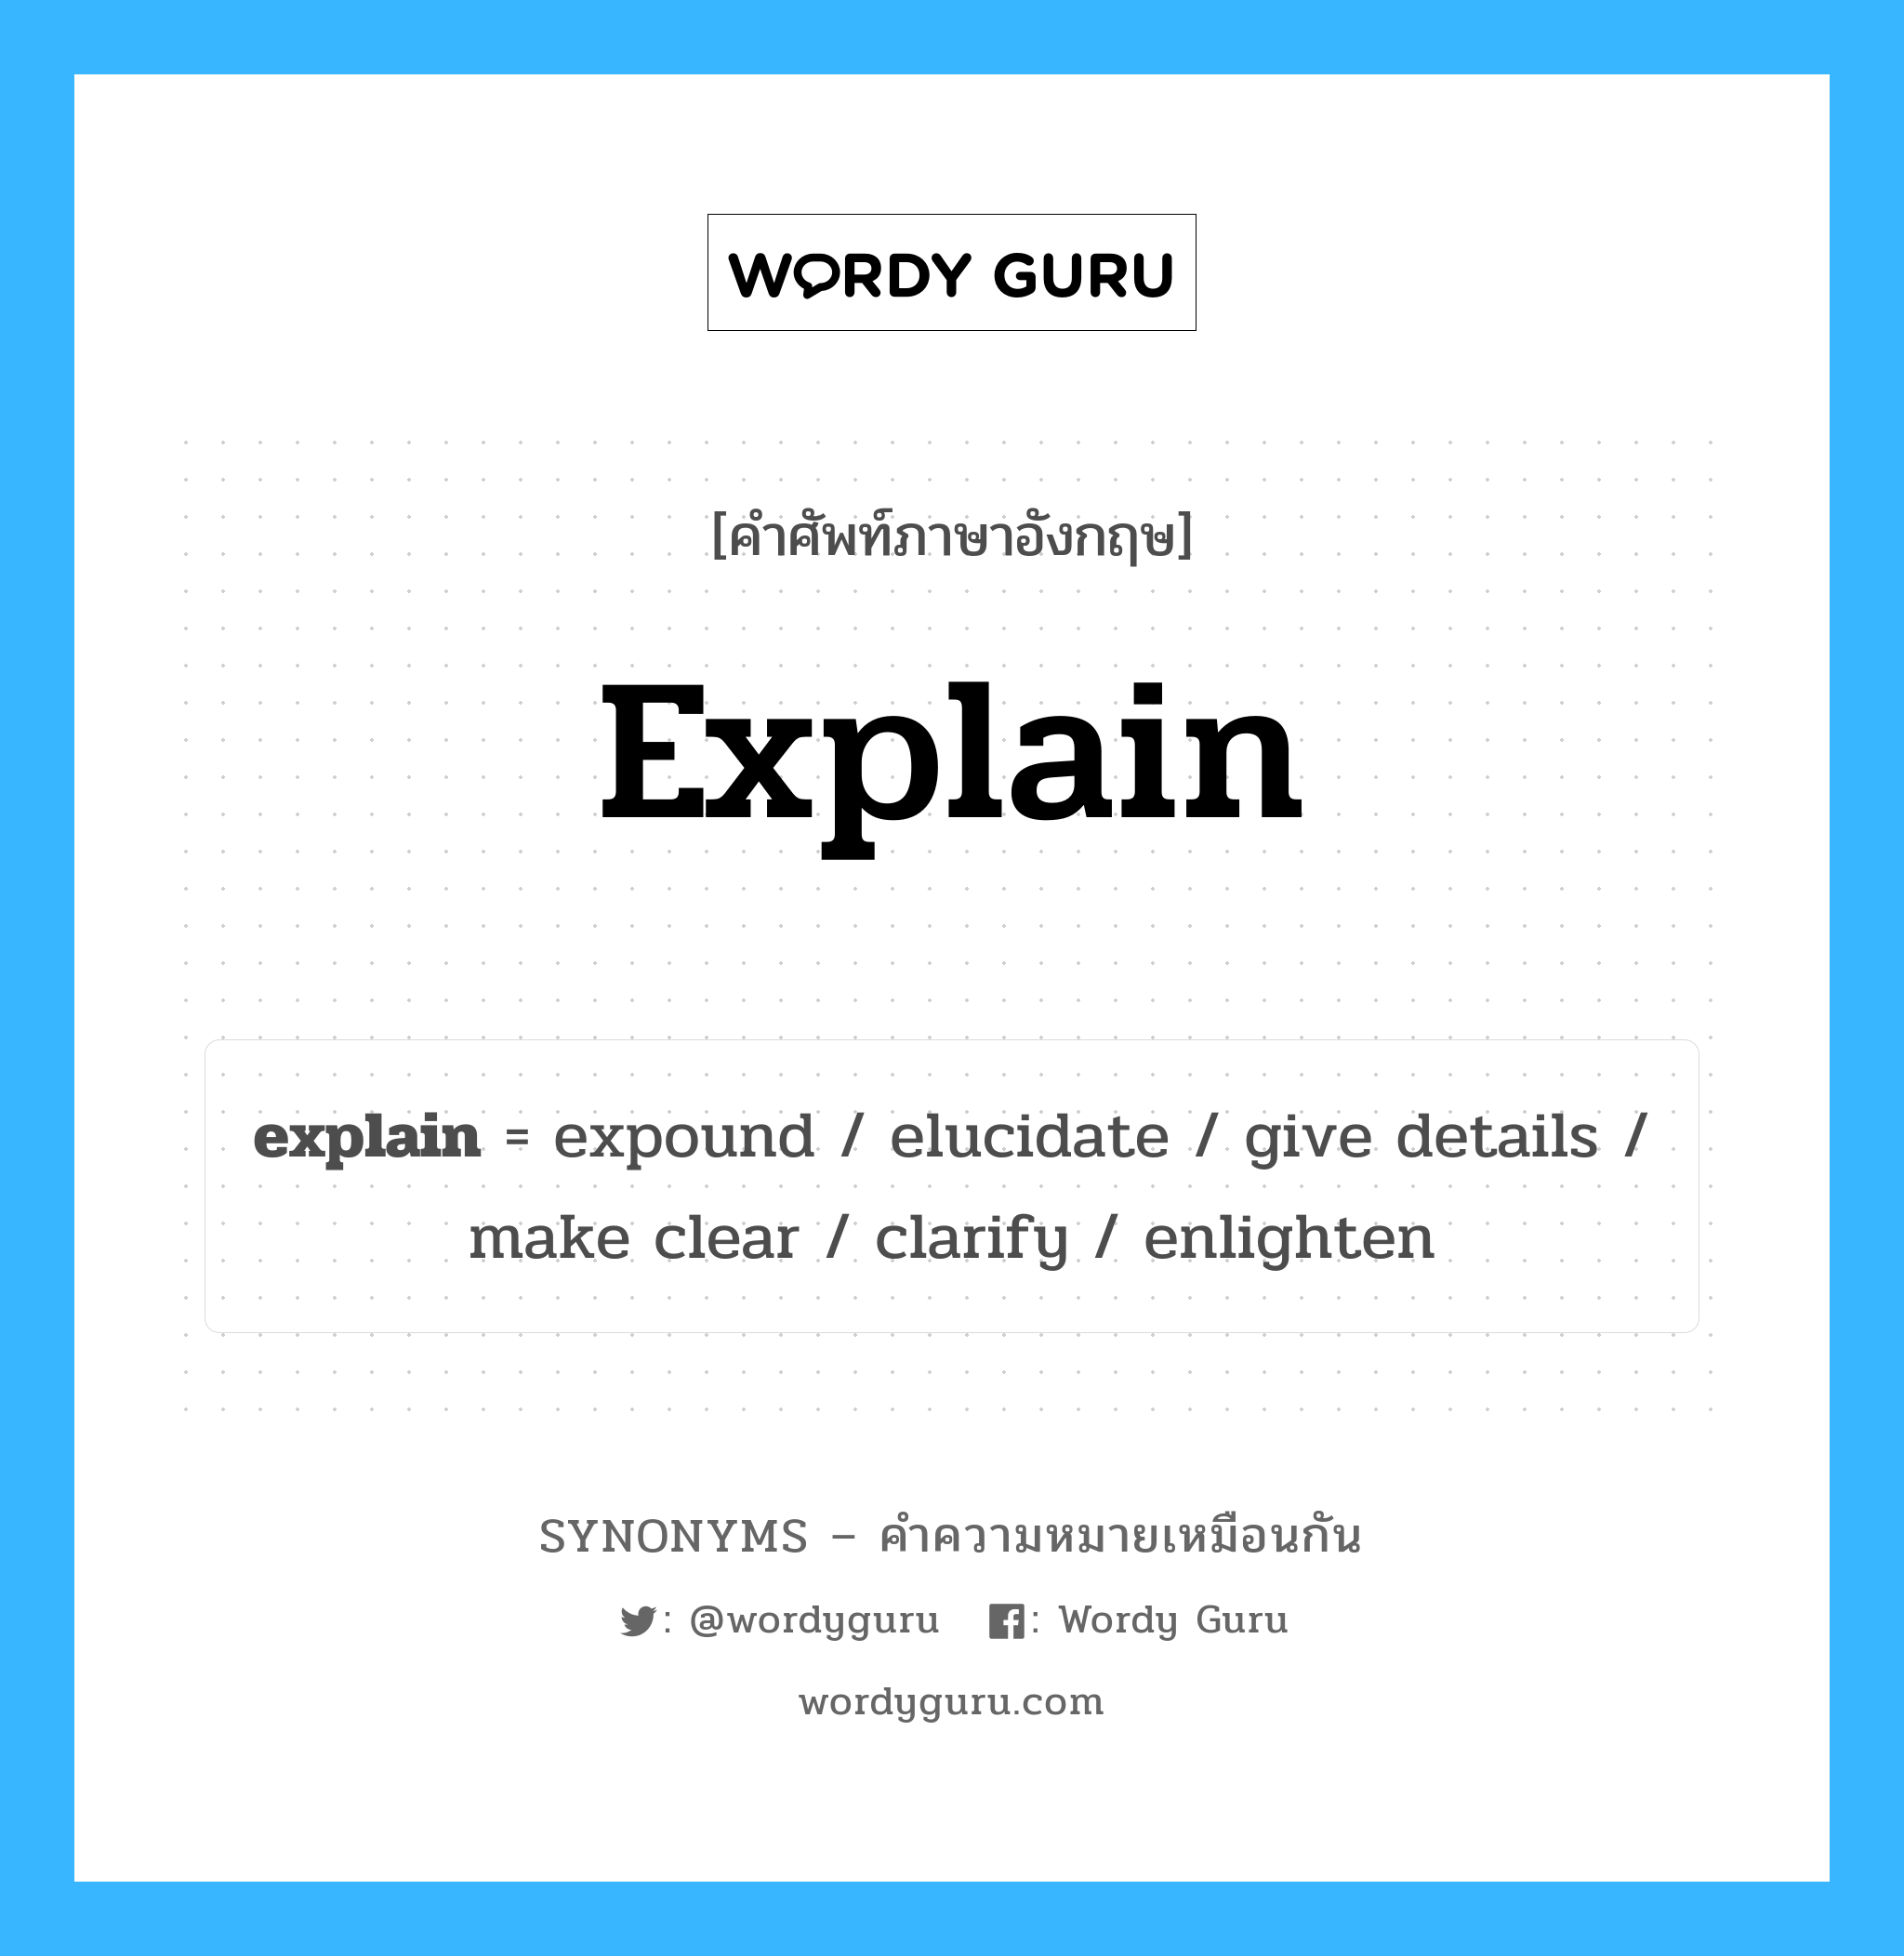 explain เป็นหนึ่งใน clarify และมีคำอื่น ๆ อีกดังนี้, คำศัพท์ภาษาอังกฤษ explain ความหมายคล้ายกันกับ clarify แปลว่า ชี้แจง หมวด clarify